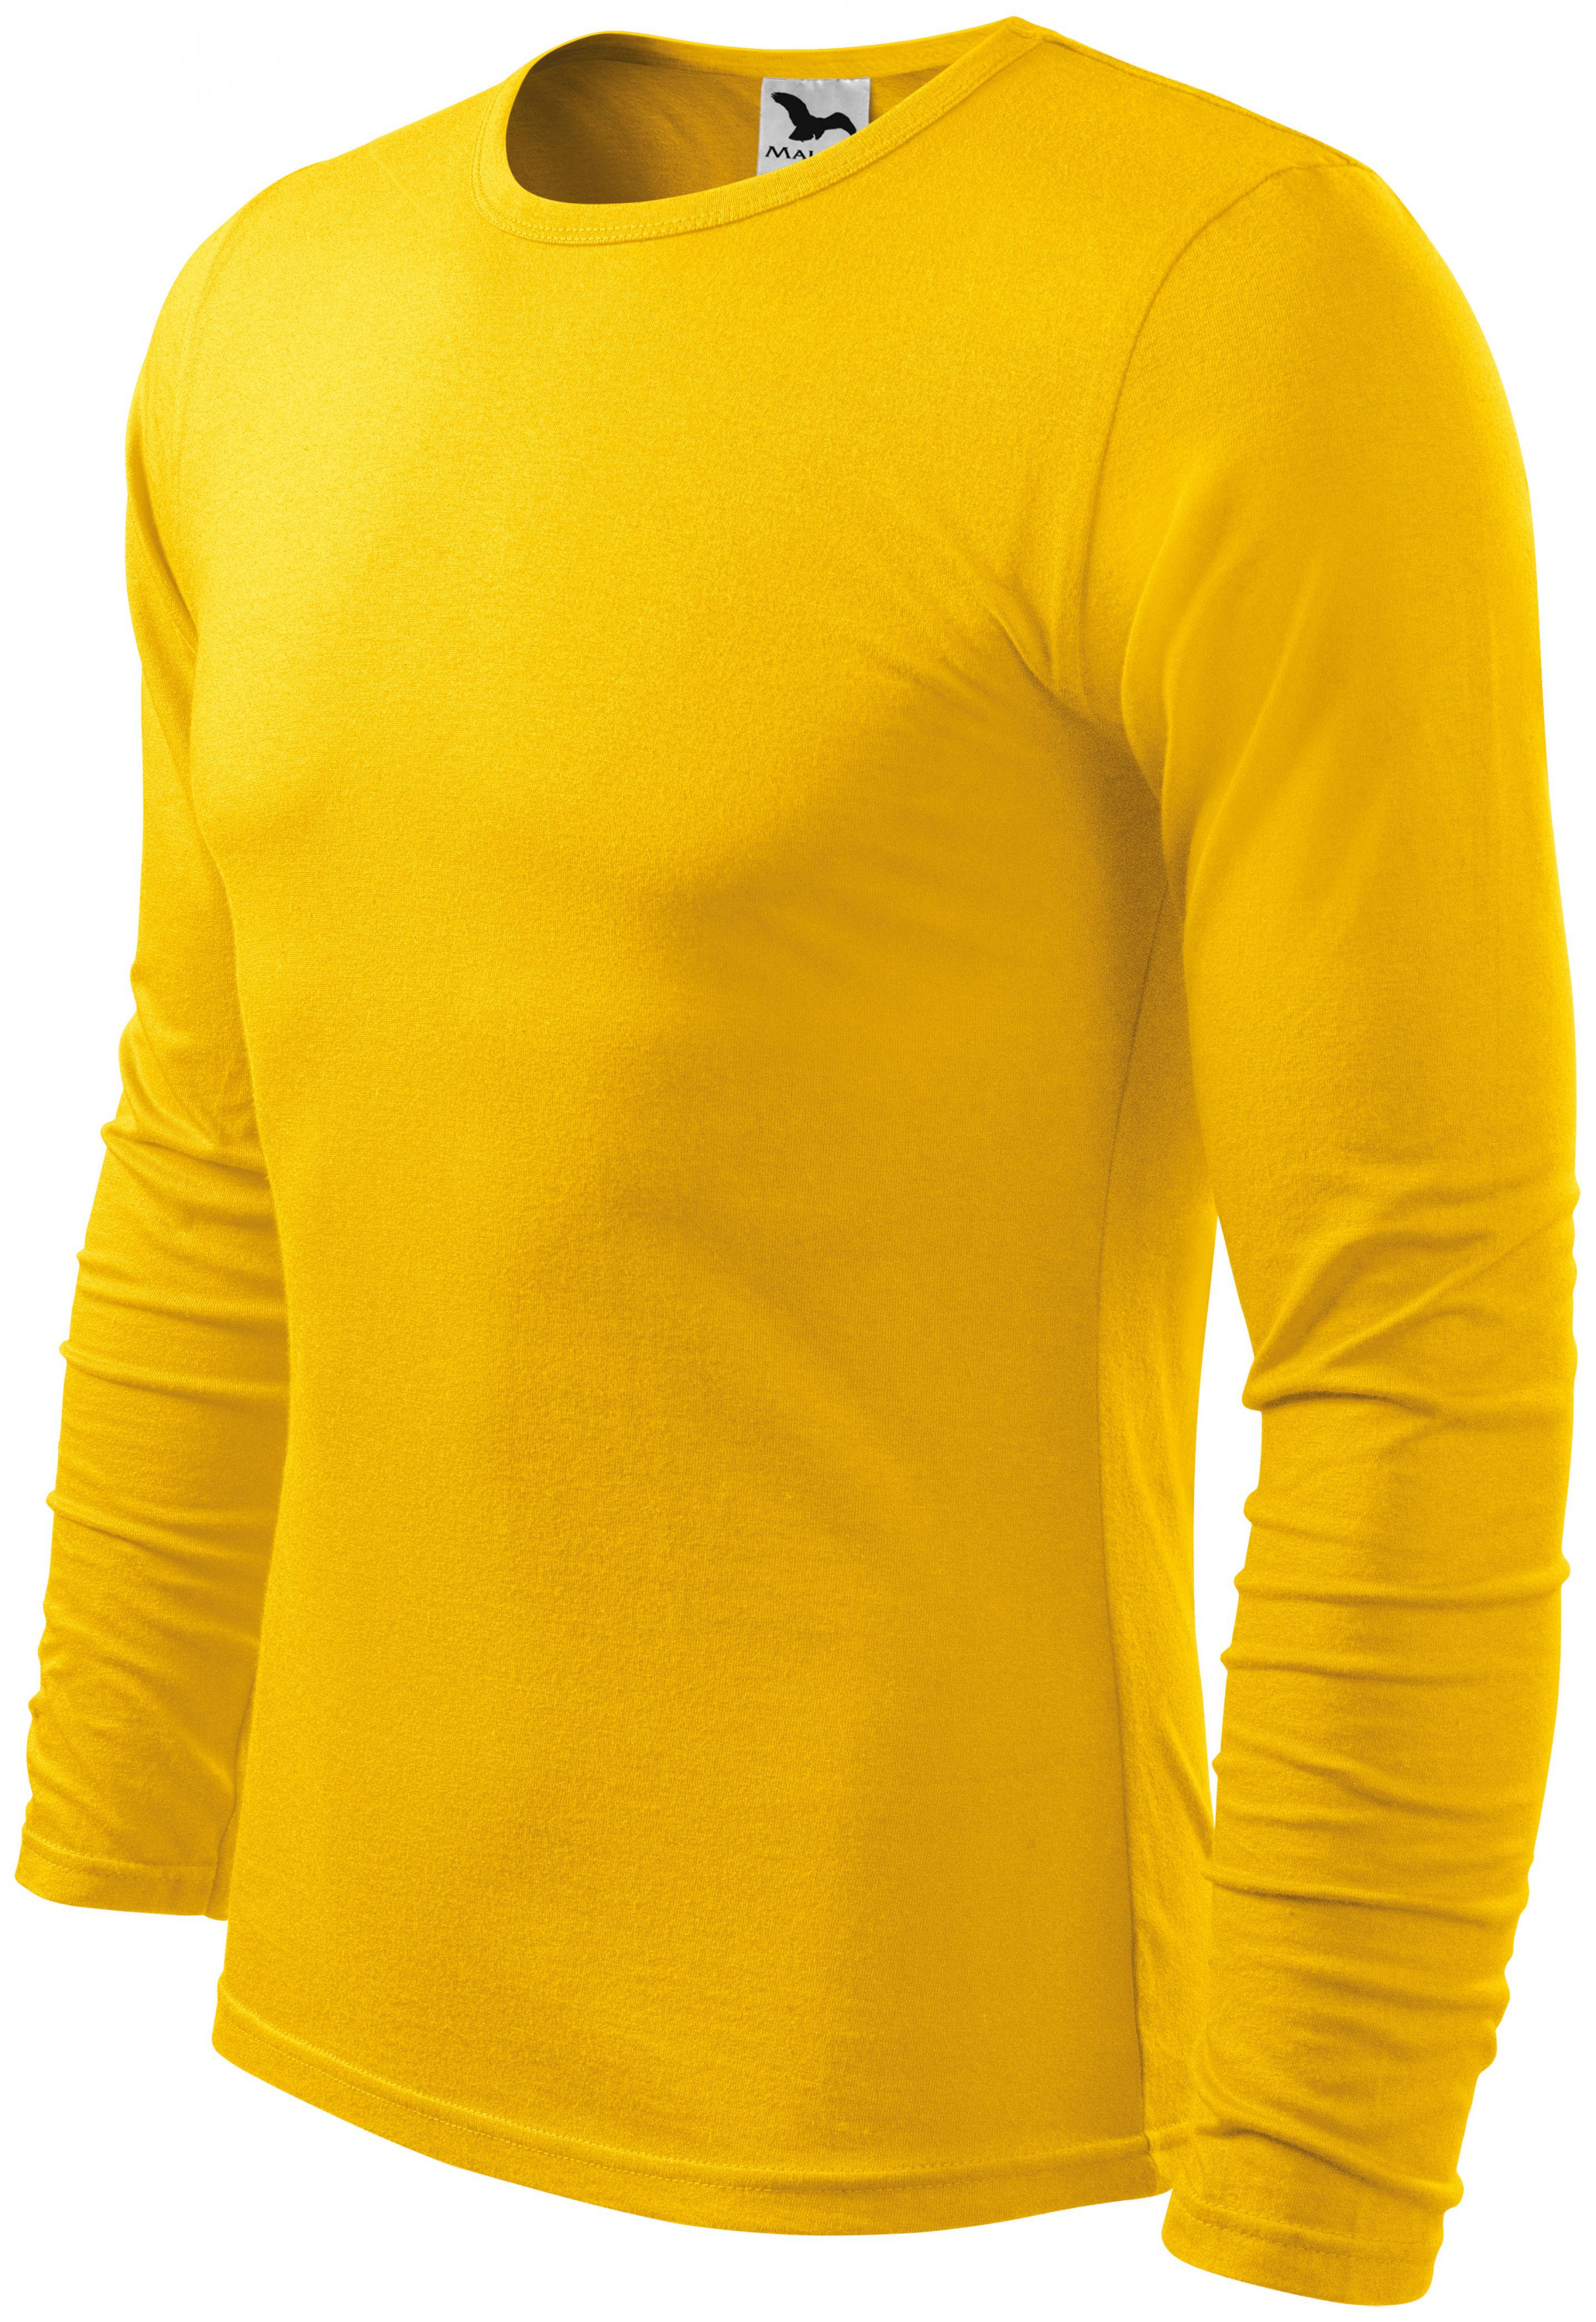 Pánske tričko s dlhým rukávom, žltá, XL